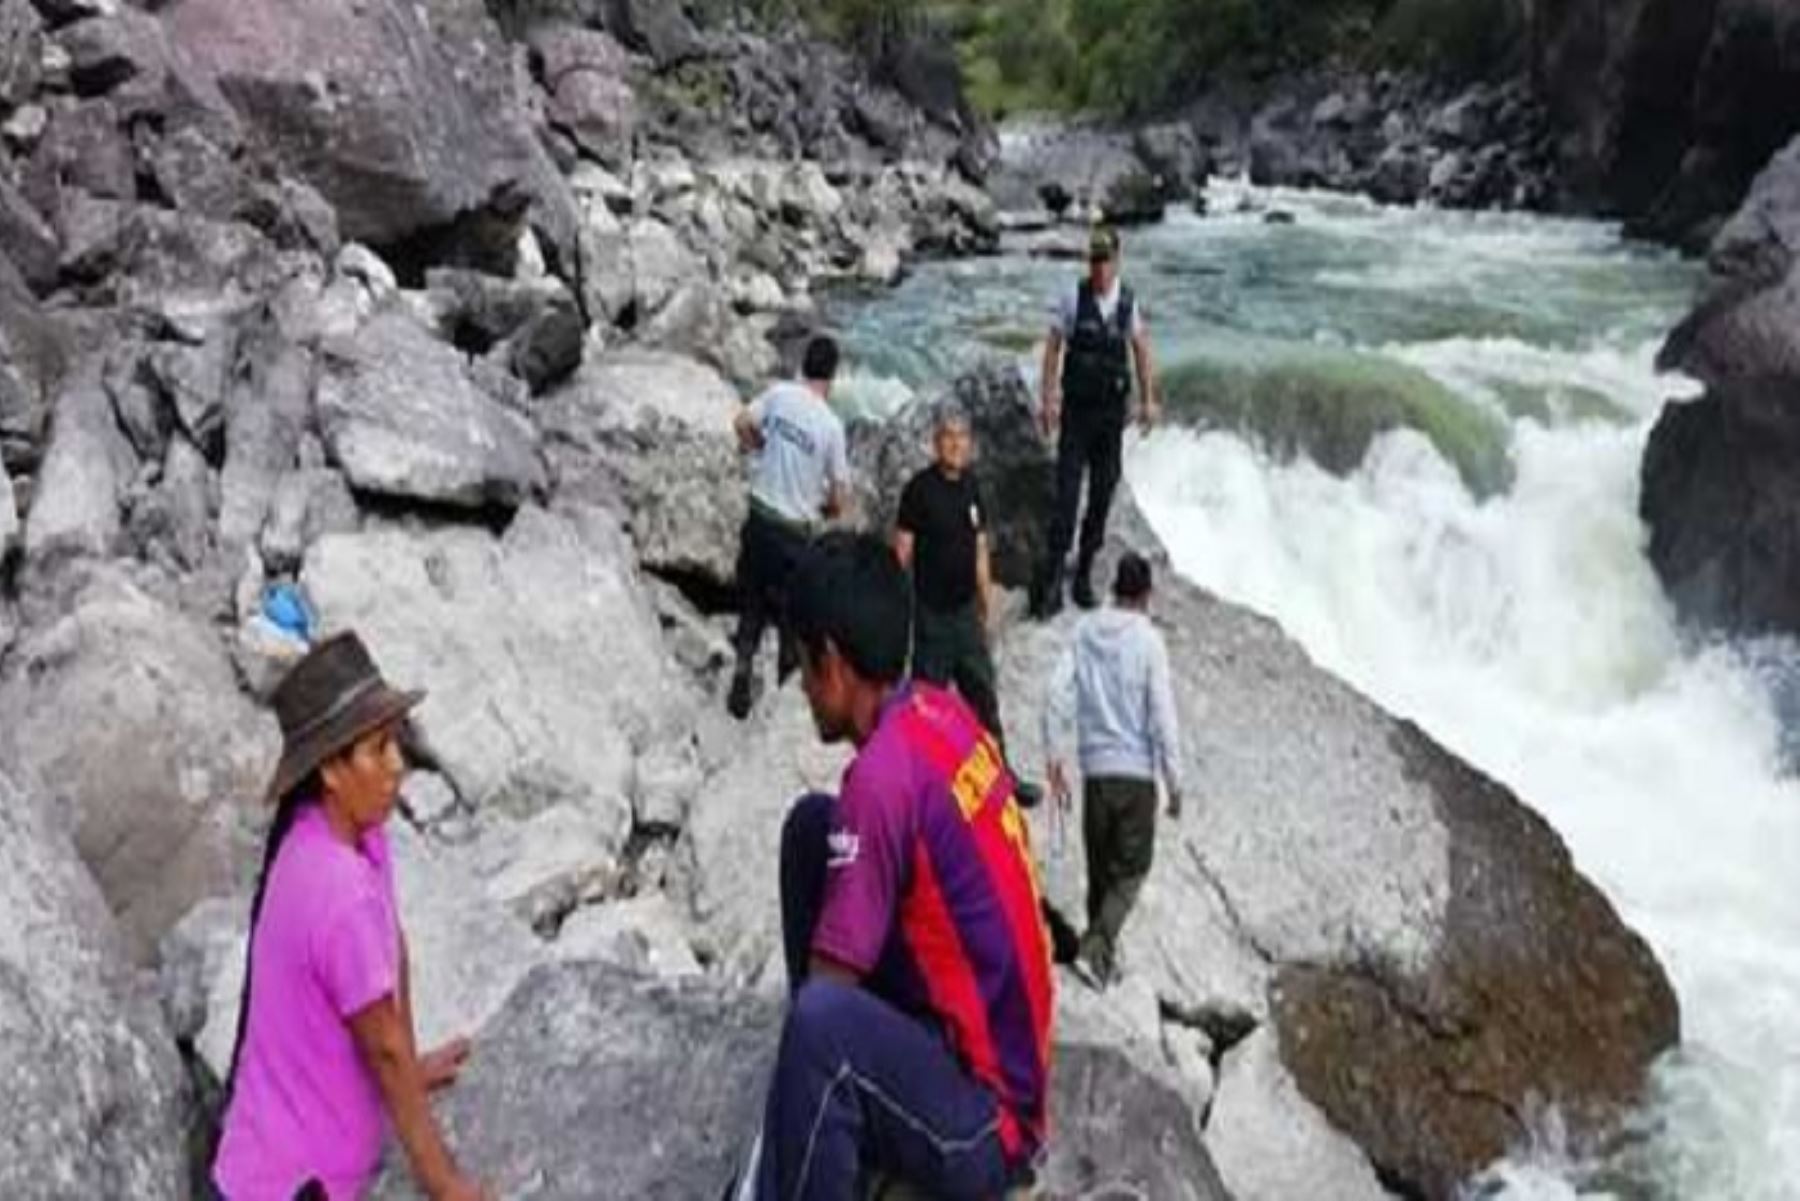 La Policía del Frente Espinar Cusco confirmó el hallazgo del cadáver de un varón en el río Velille, que se presume sea uno de los desaparecidos por la caída de una minivan el pasado 14 de febrero en el distrito de Velille, provincia cusqueña de Chumbivilcas.